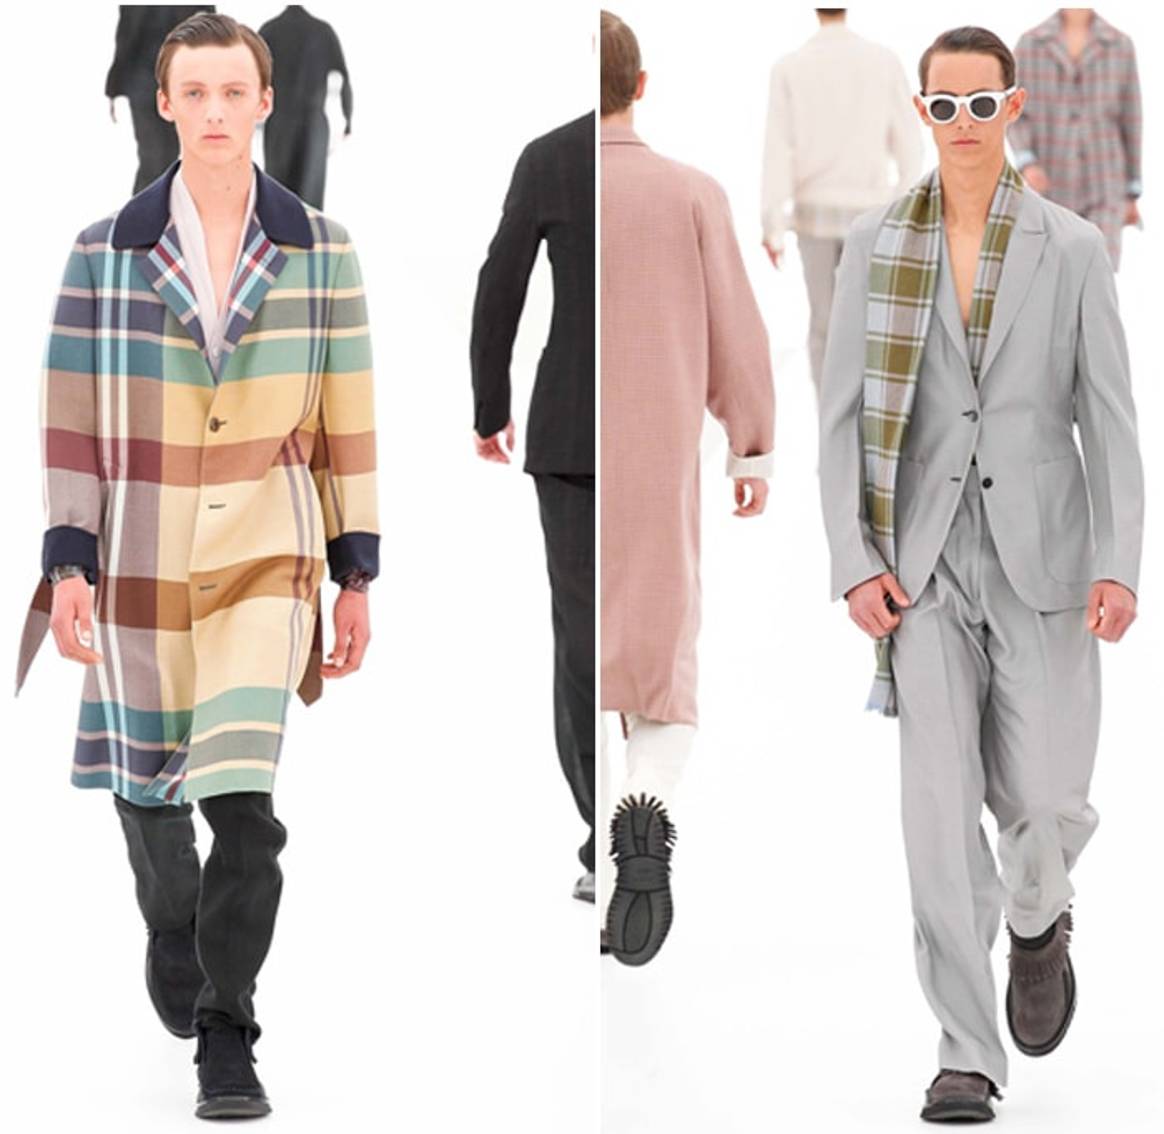 Transparencias e inspiración oriental en la Semana de la Moda masculina de Milán